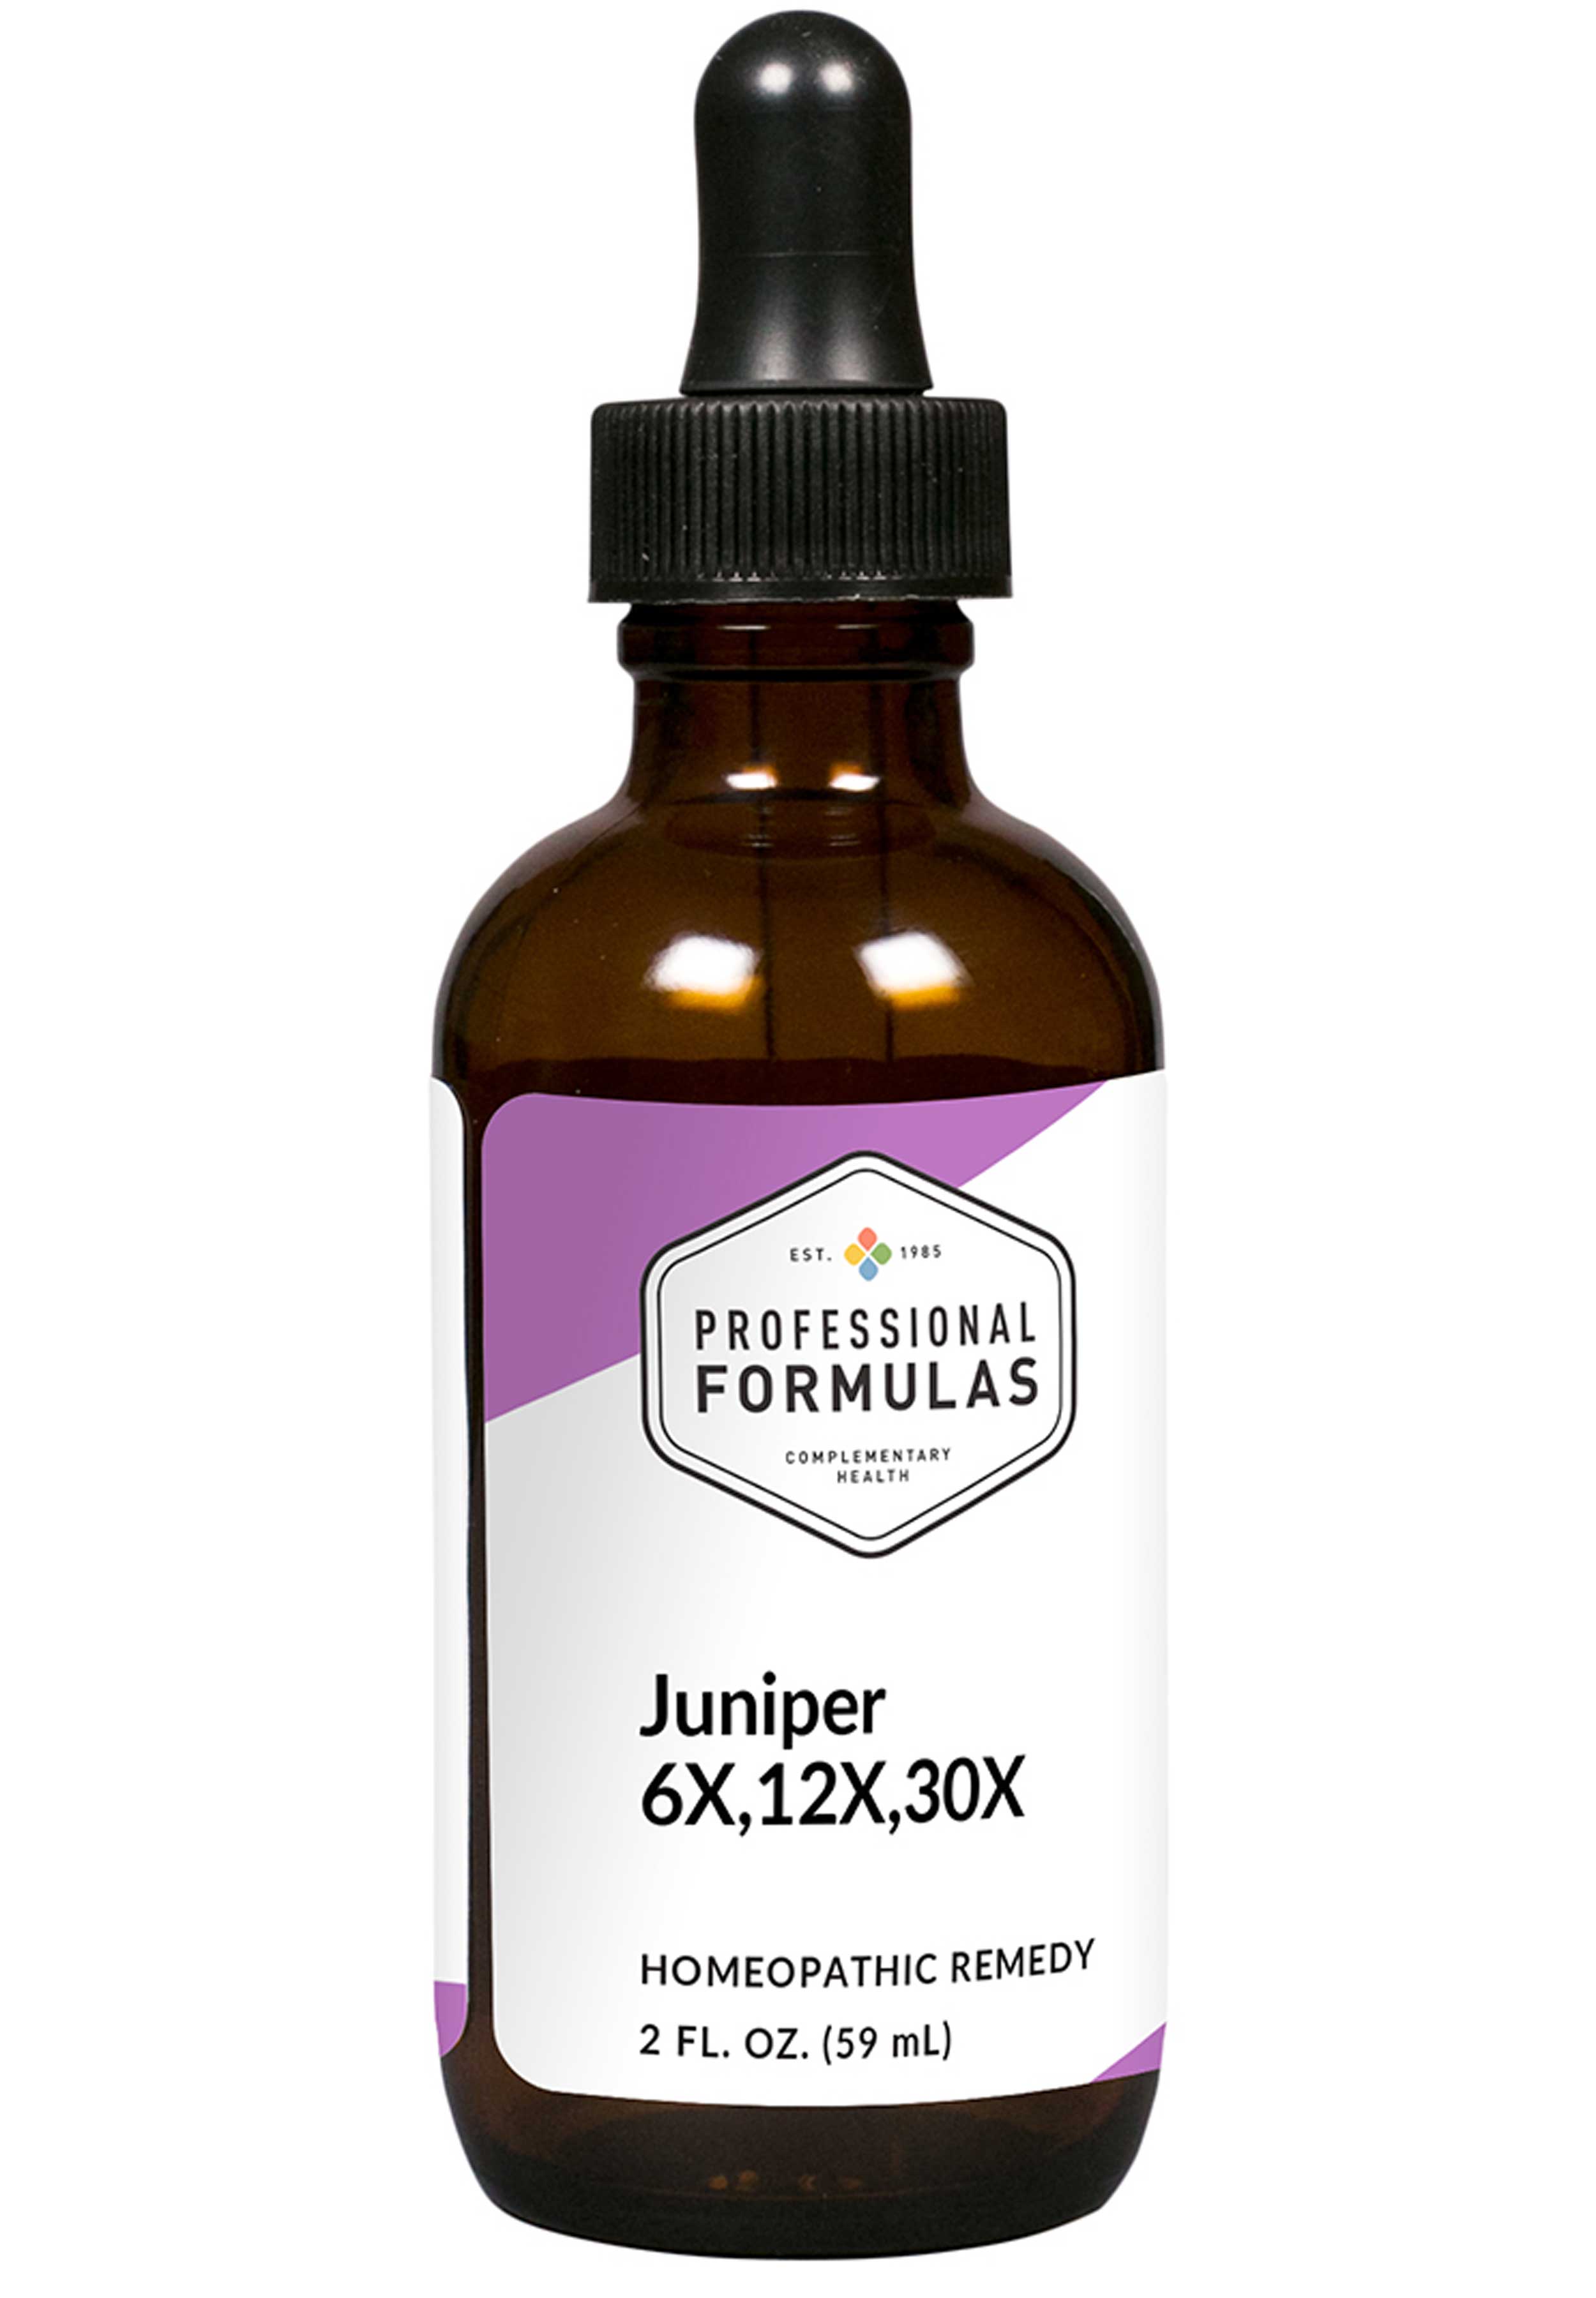 Professional Formulas Juniper (6x,12x,30x)